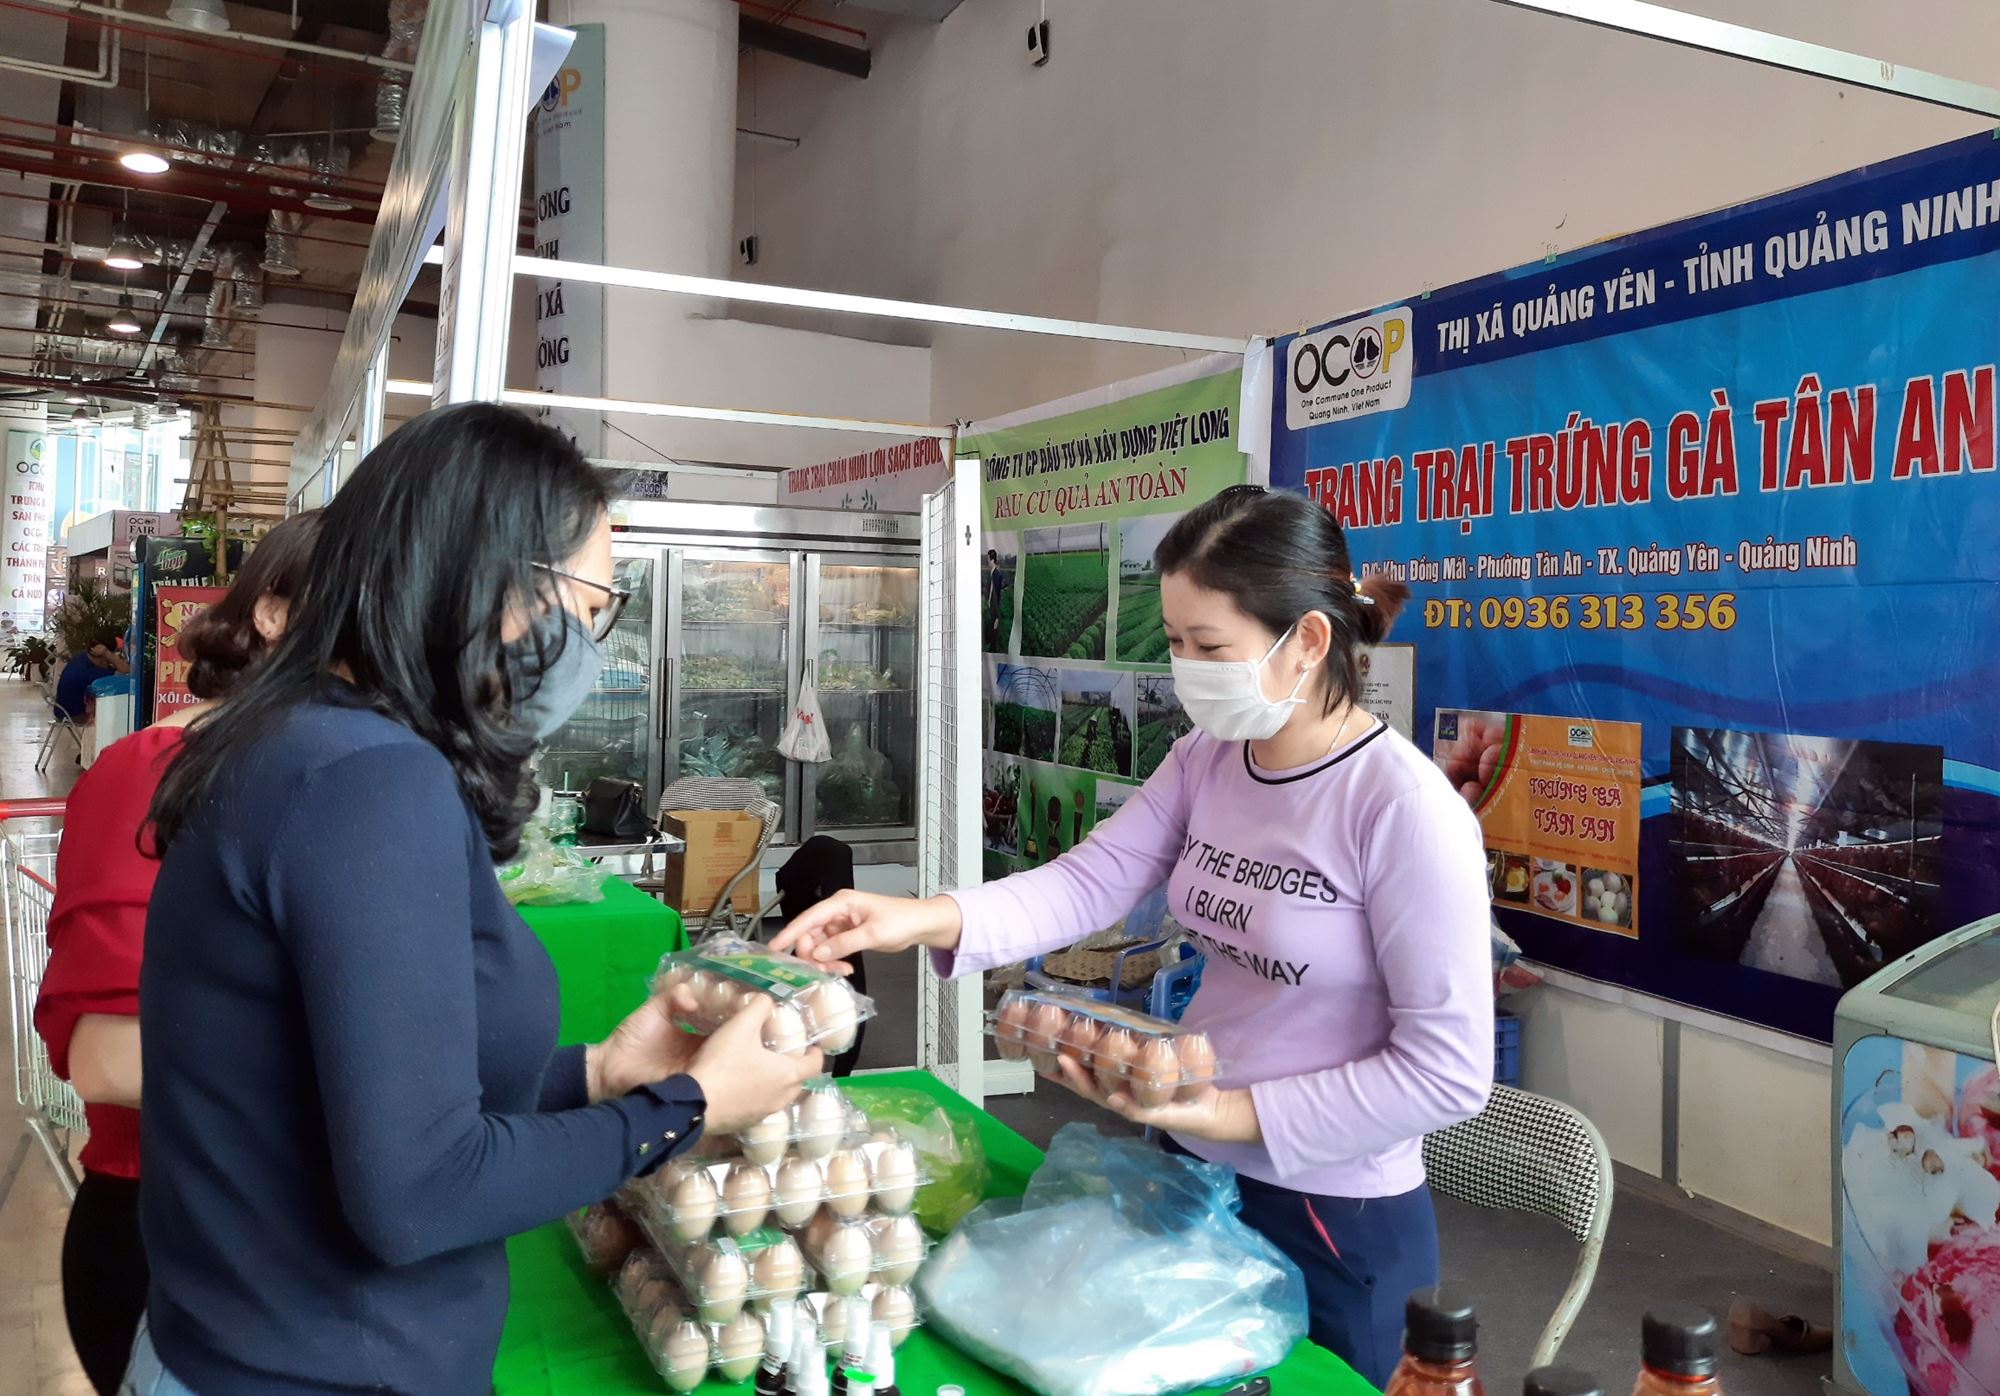 Trứng gà Tân An bày bán tại Hội chợ OCOP-2020 thu hut đông người mua. 